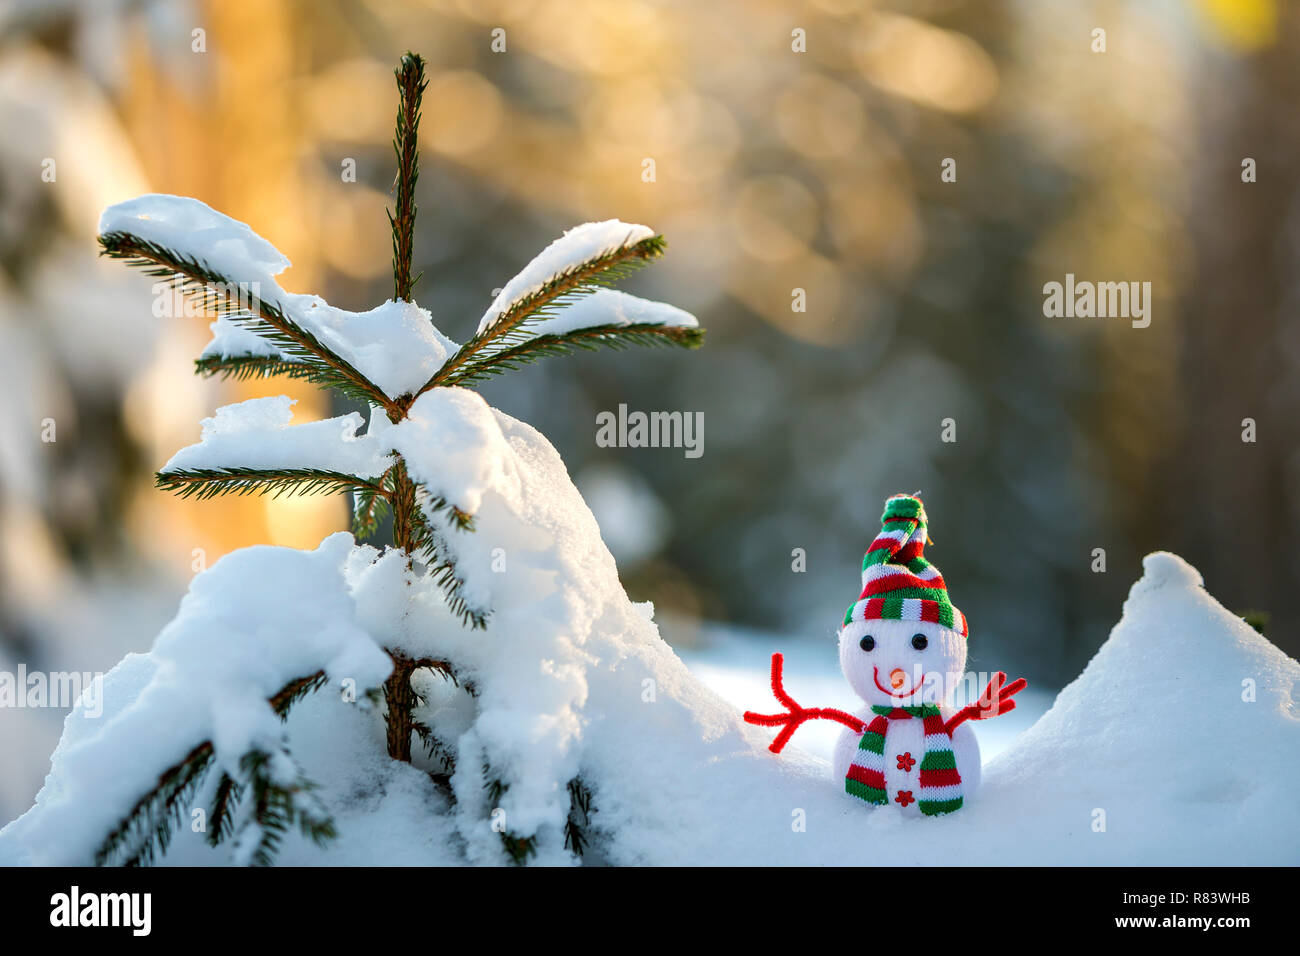 Kleine lustige Spielzeug baby Schneemann auf gestrickte Mütze und Schal in  tiefem Schnee draussen auf helle blaue und weiße Kopie Raum Hintergrund.  Frohes Neues Jahr und Frohe C Stockfotografie - Alamy